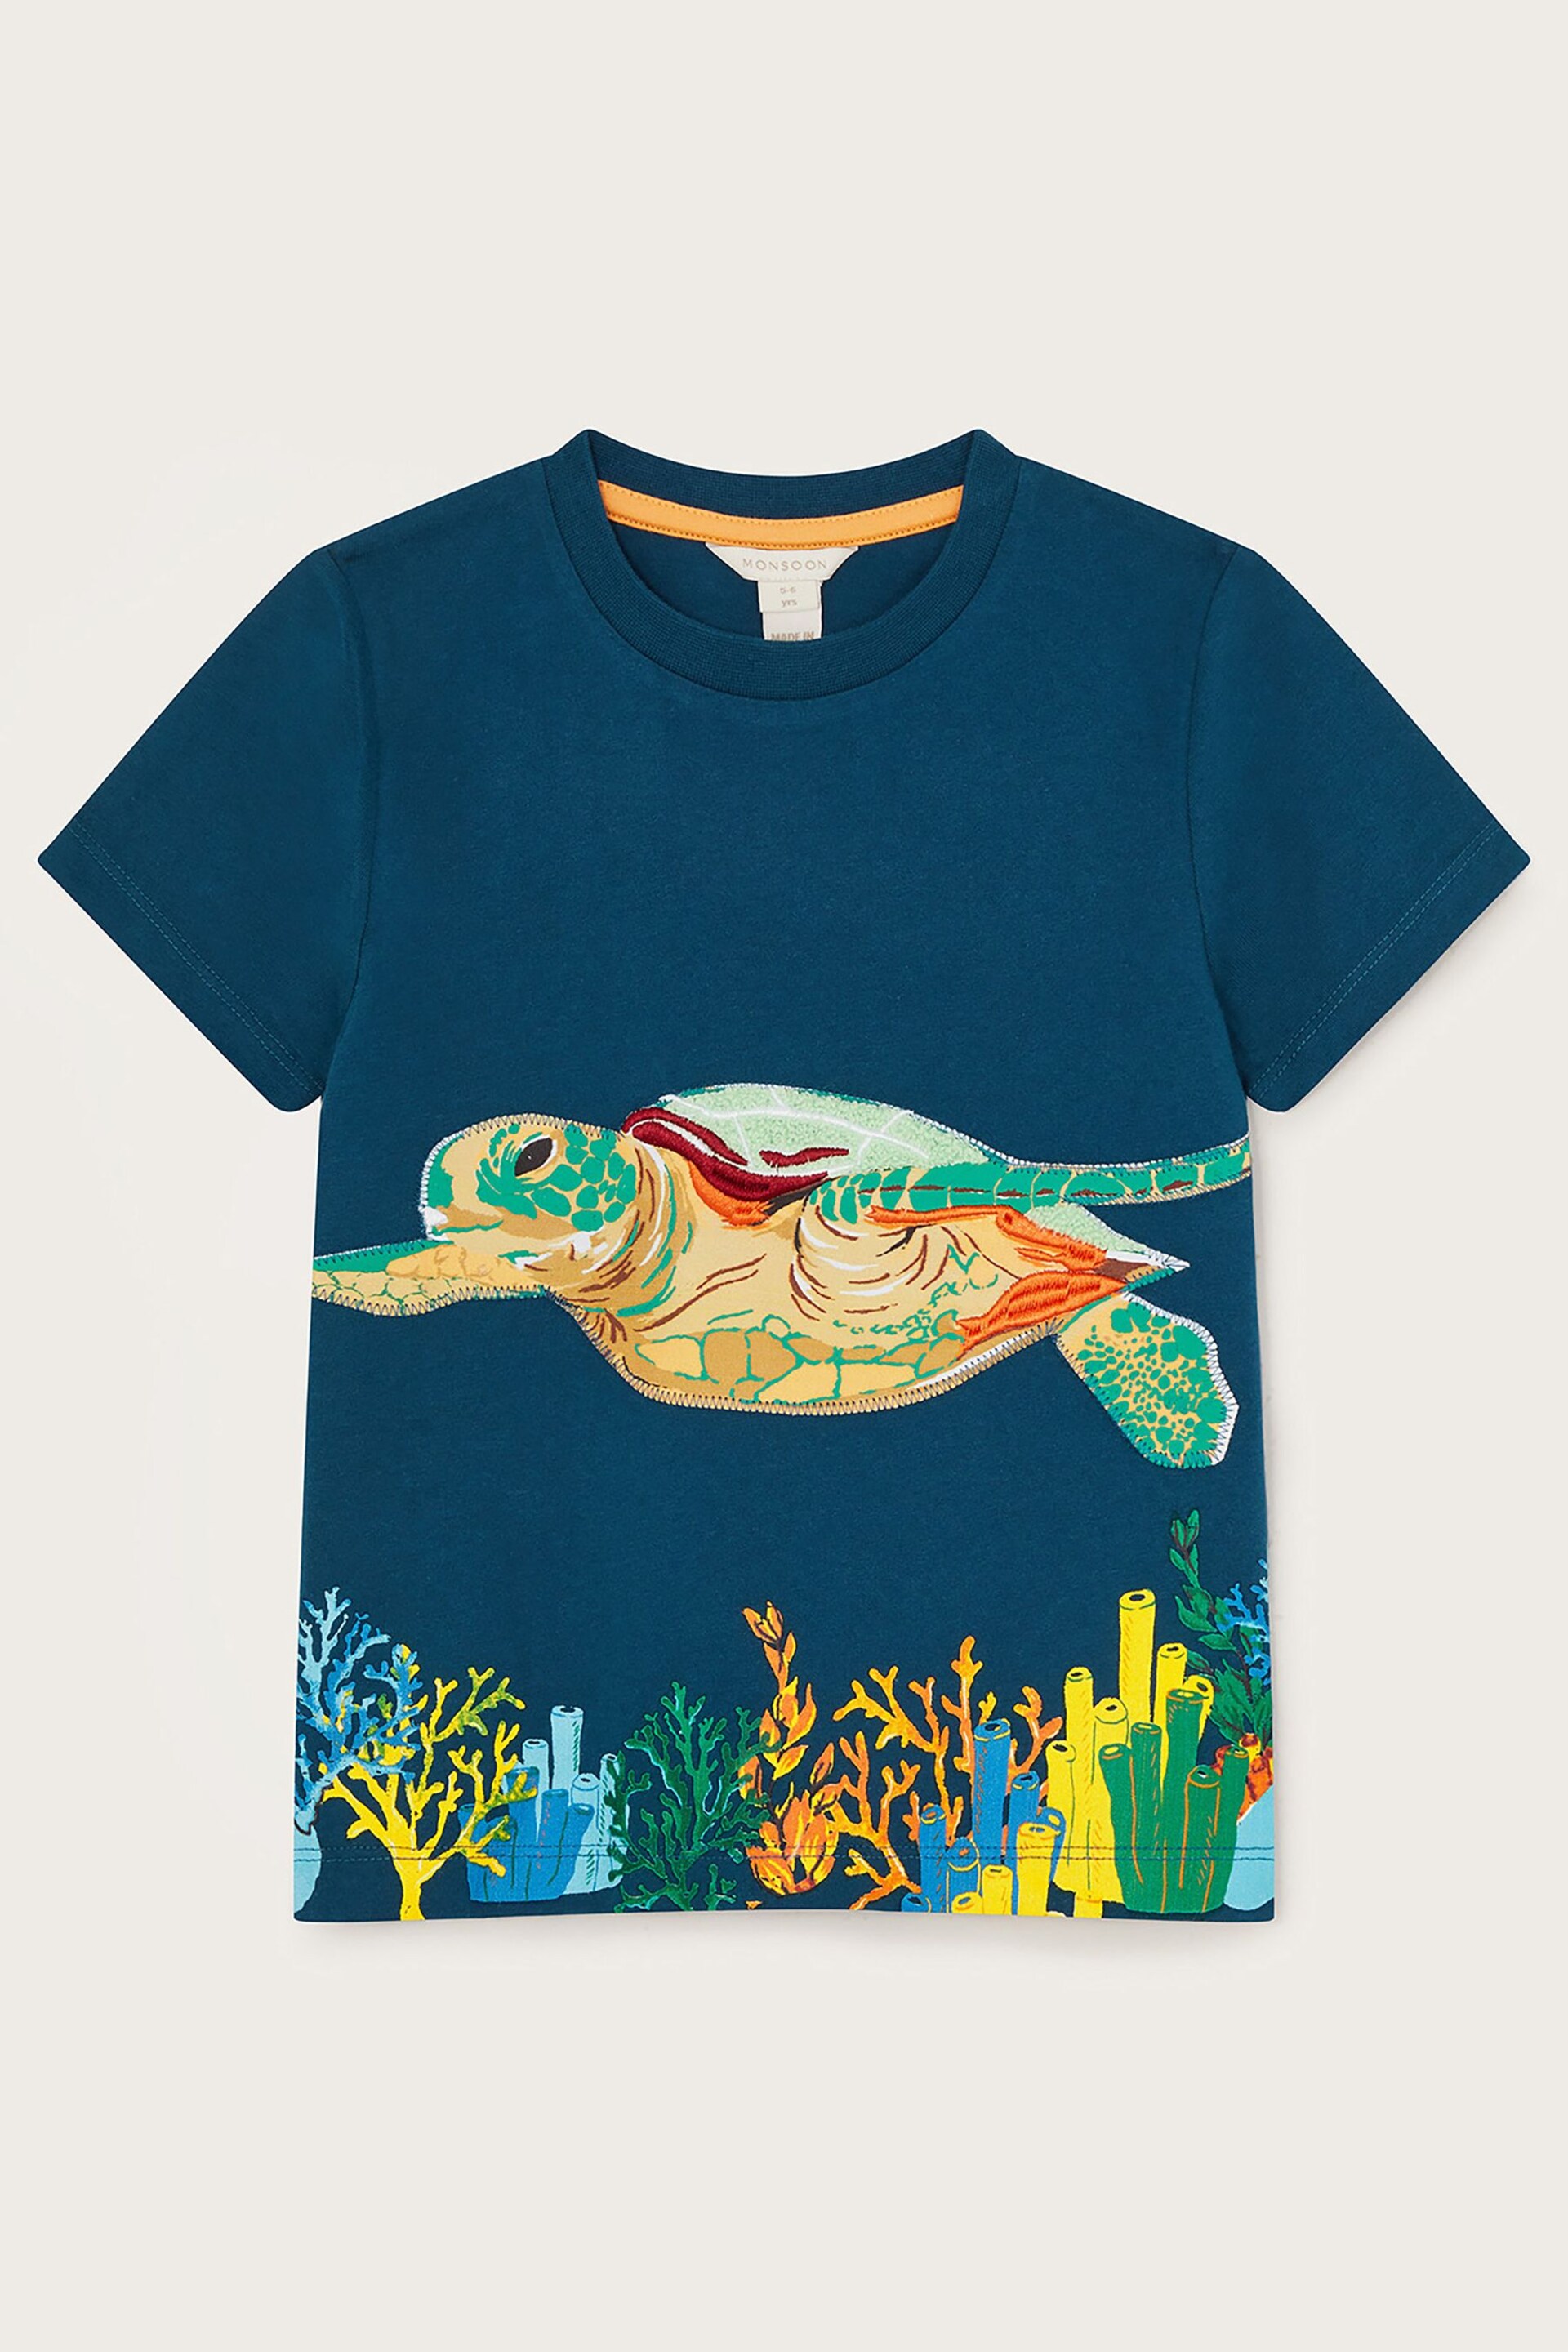 Monsoon Blue Turtle Appliqué T-Shirt - Image 1 of 3